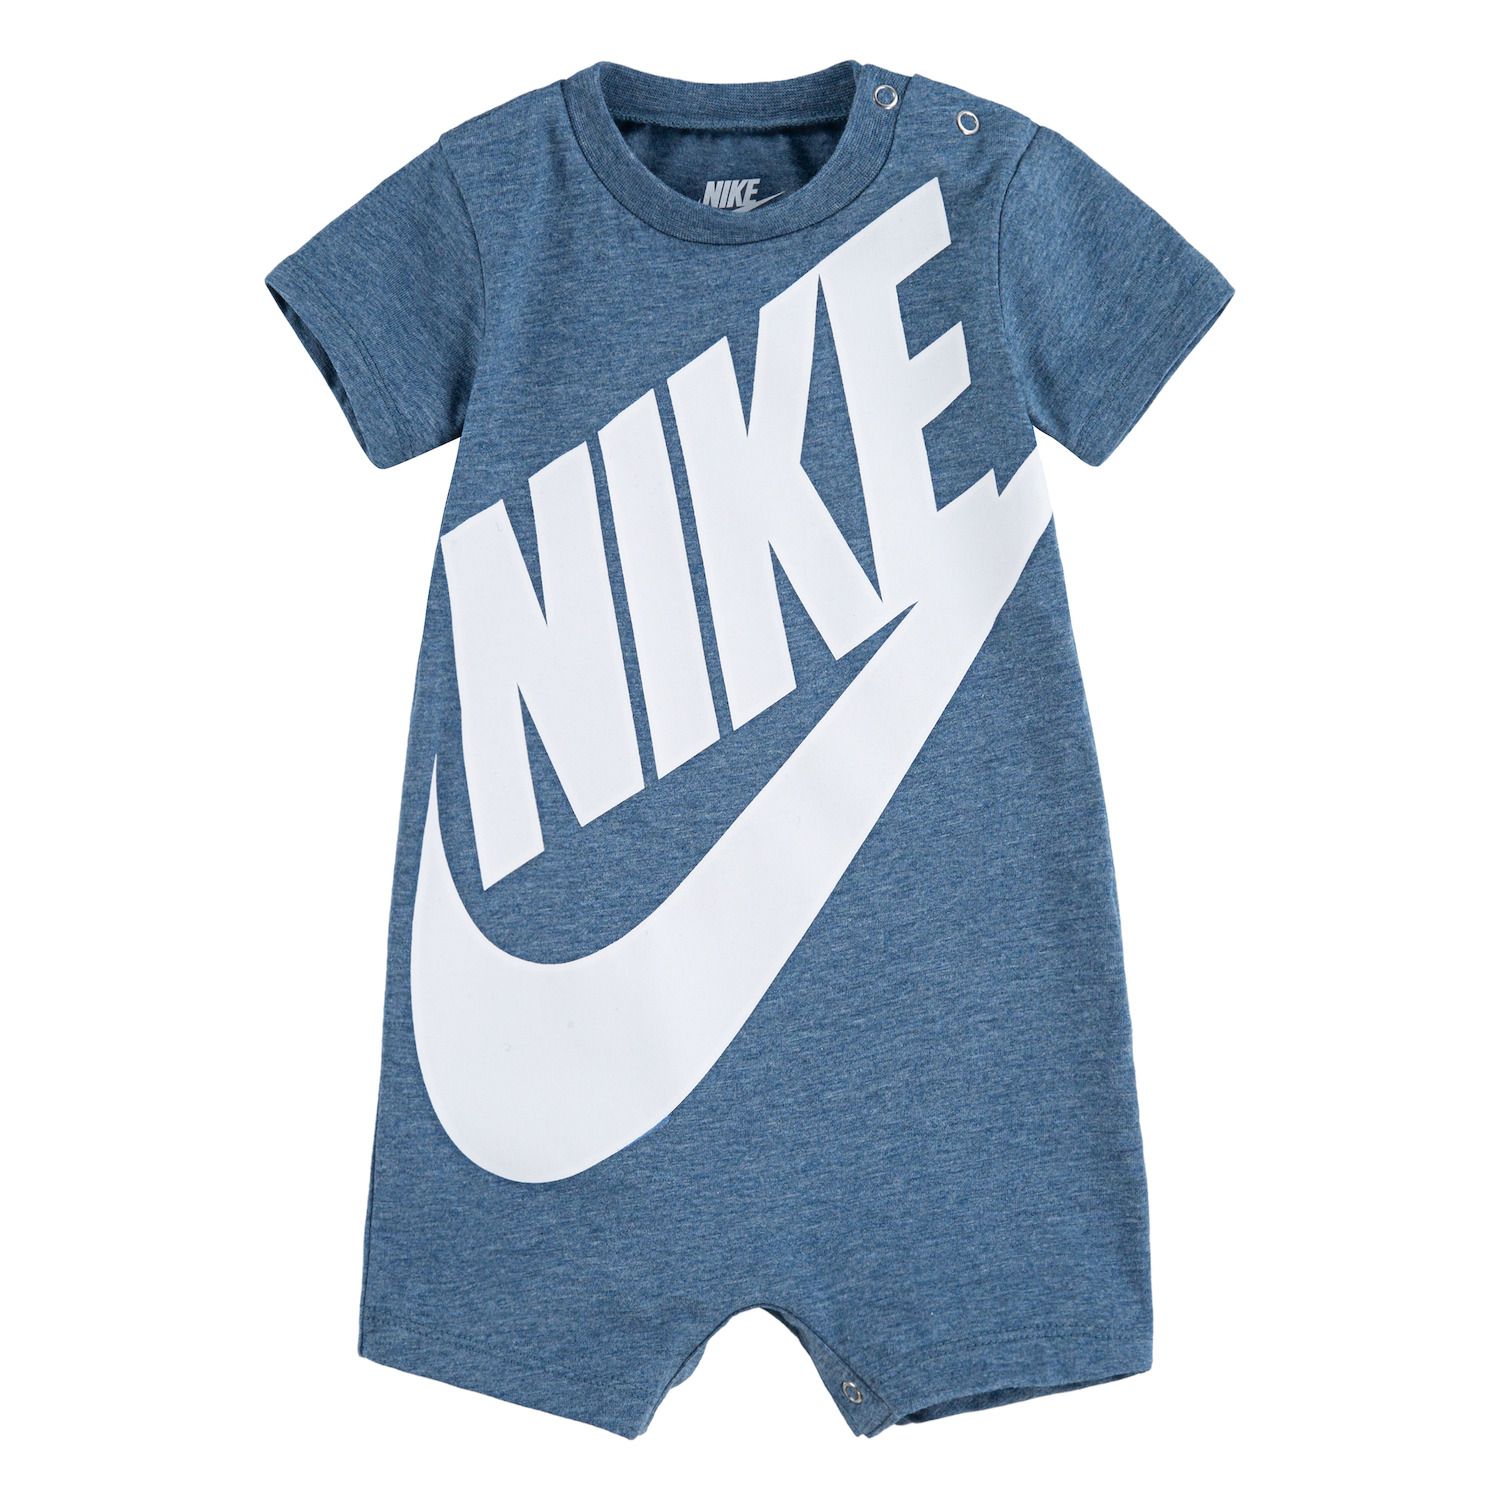 Under $10 Boys Nike Clothing | Kohl's